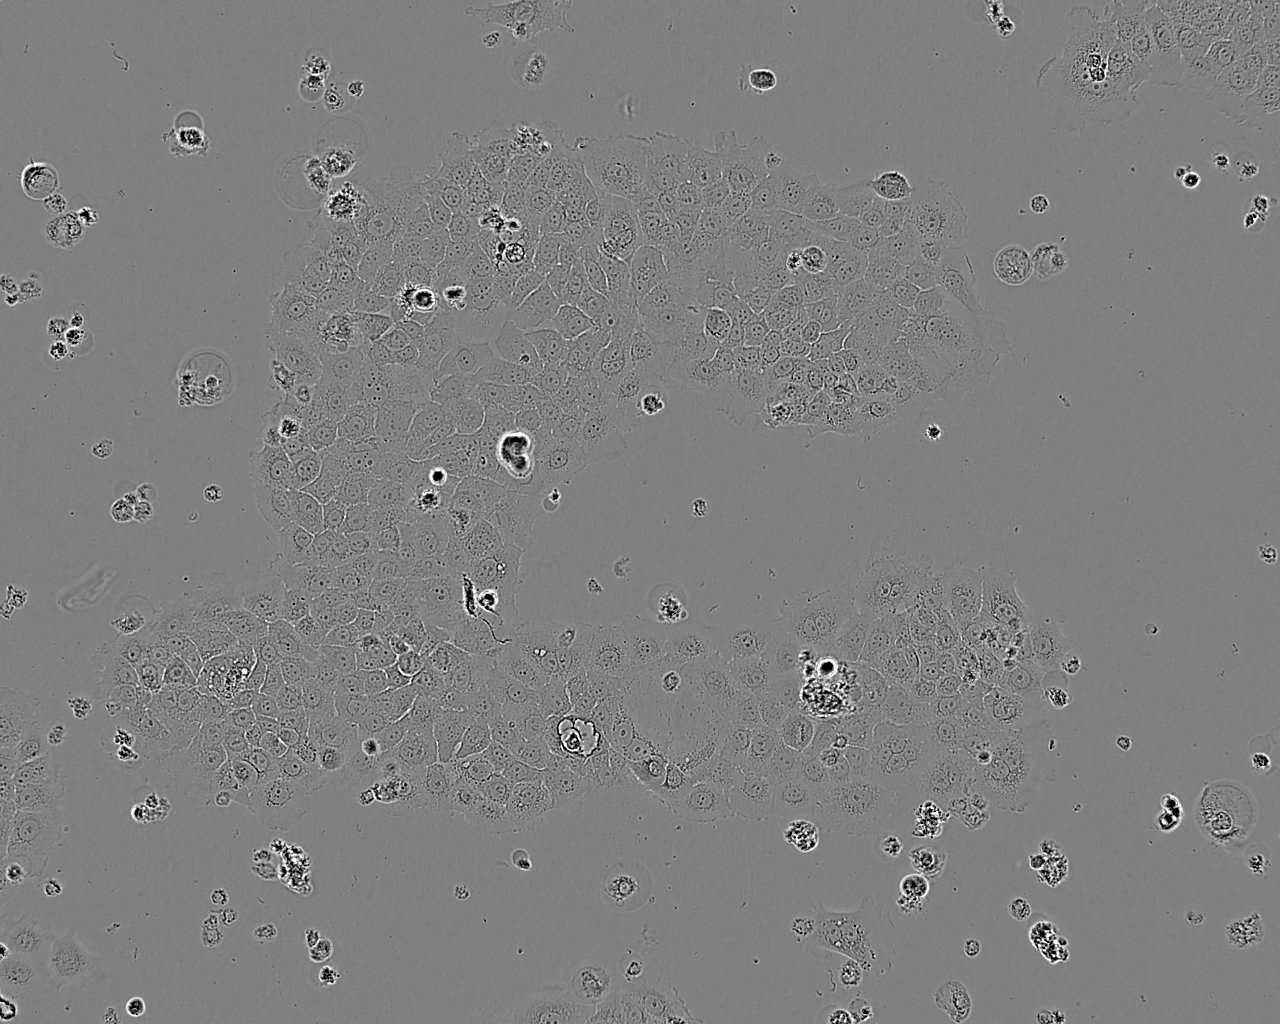 SW1116 epithelioid cells人结肠癌细胞系,SW1116 epithelioid cells